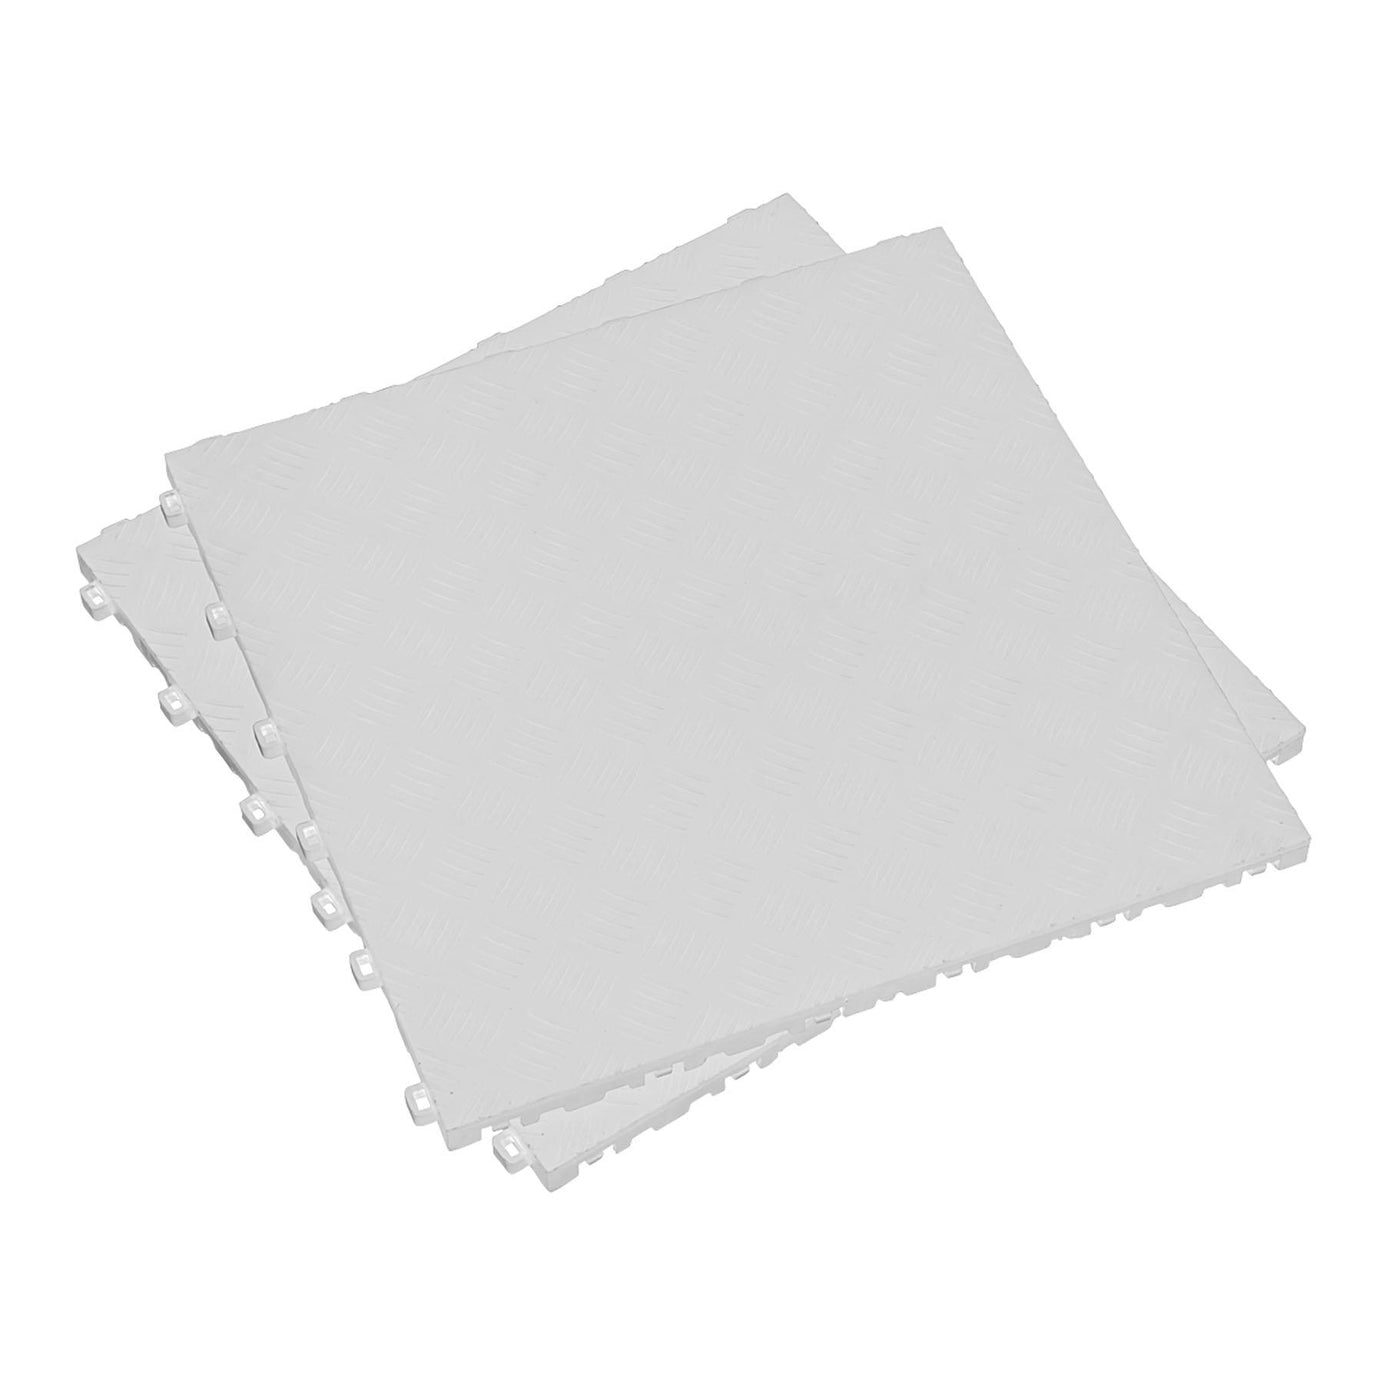 Sealey Polypropylene Floor Tile-White Treadplate 400x400mm Pk of 9